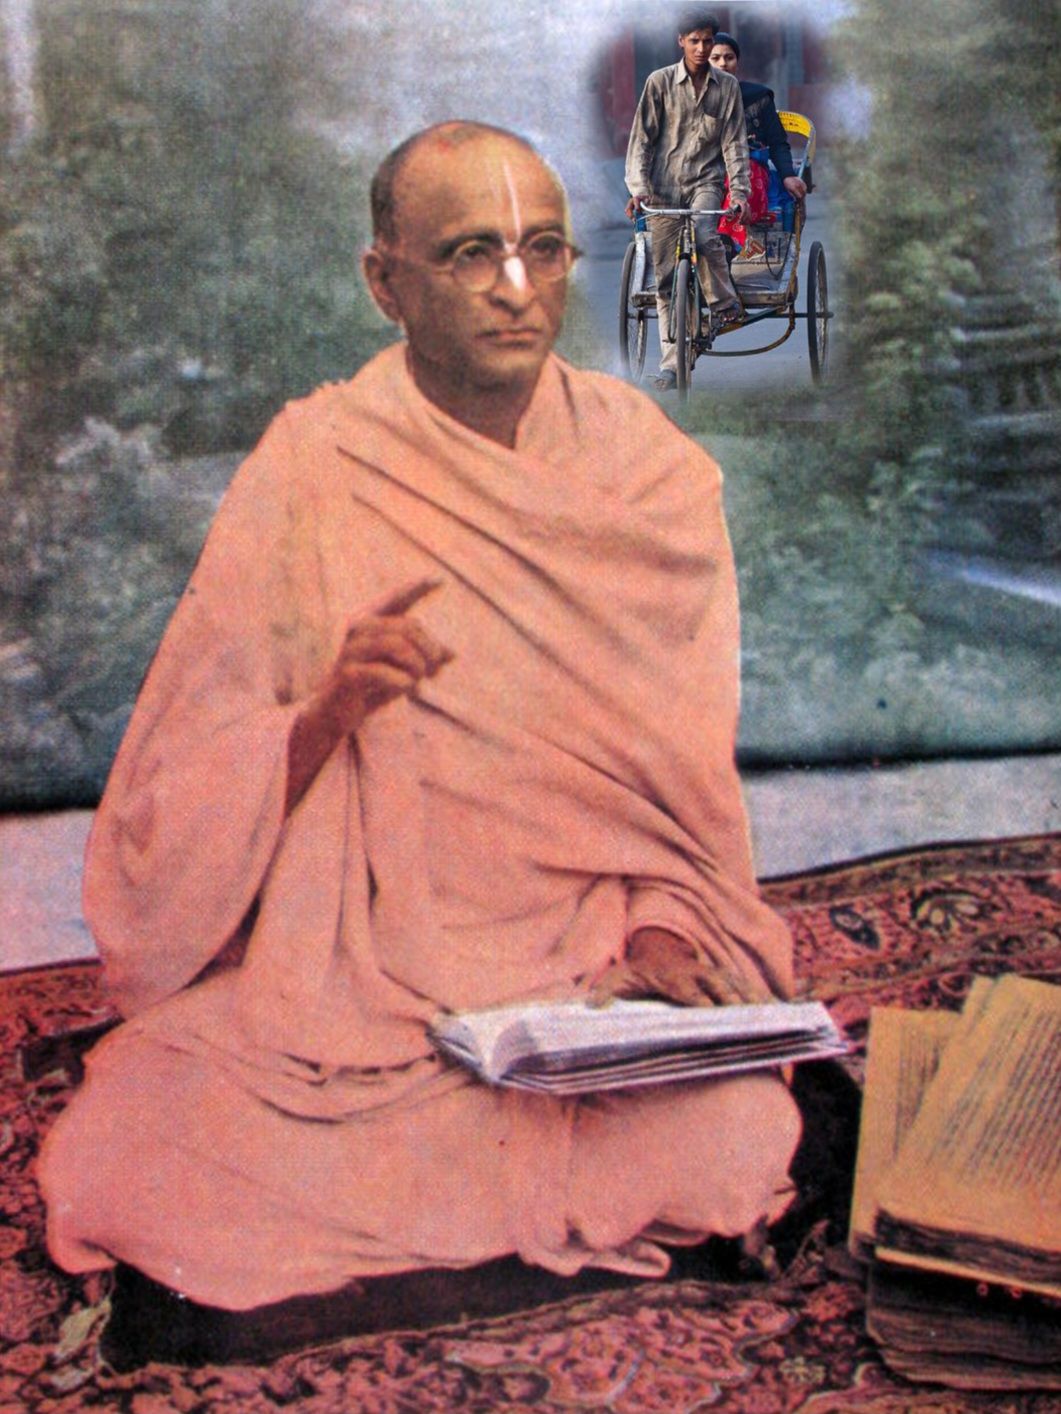 Bhaktisiddhanta Maharaj and the rickshaw wallah 